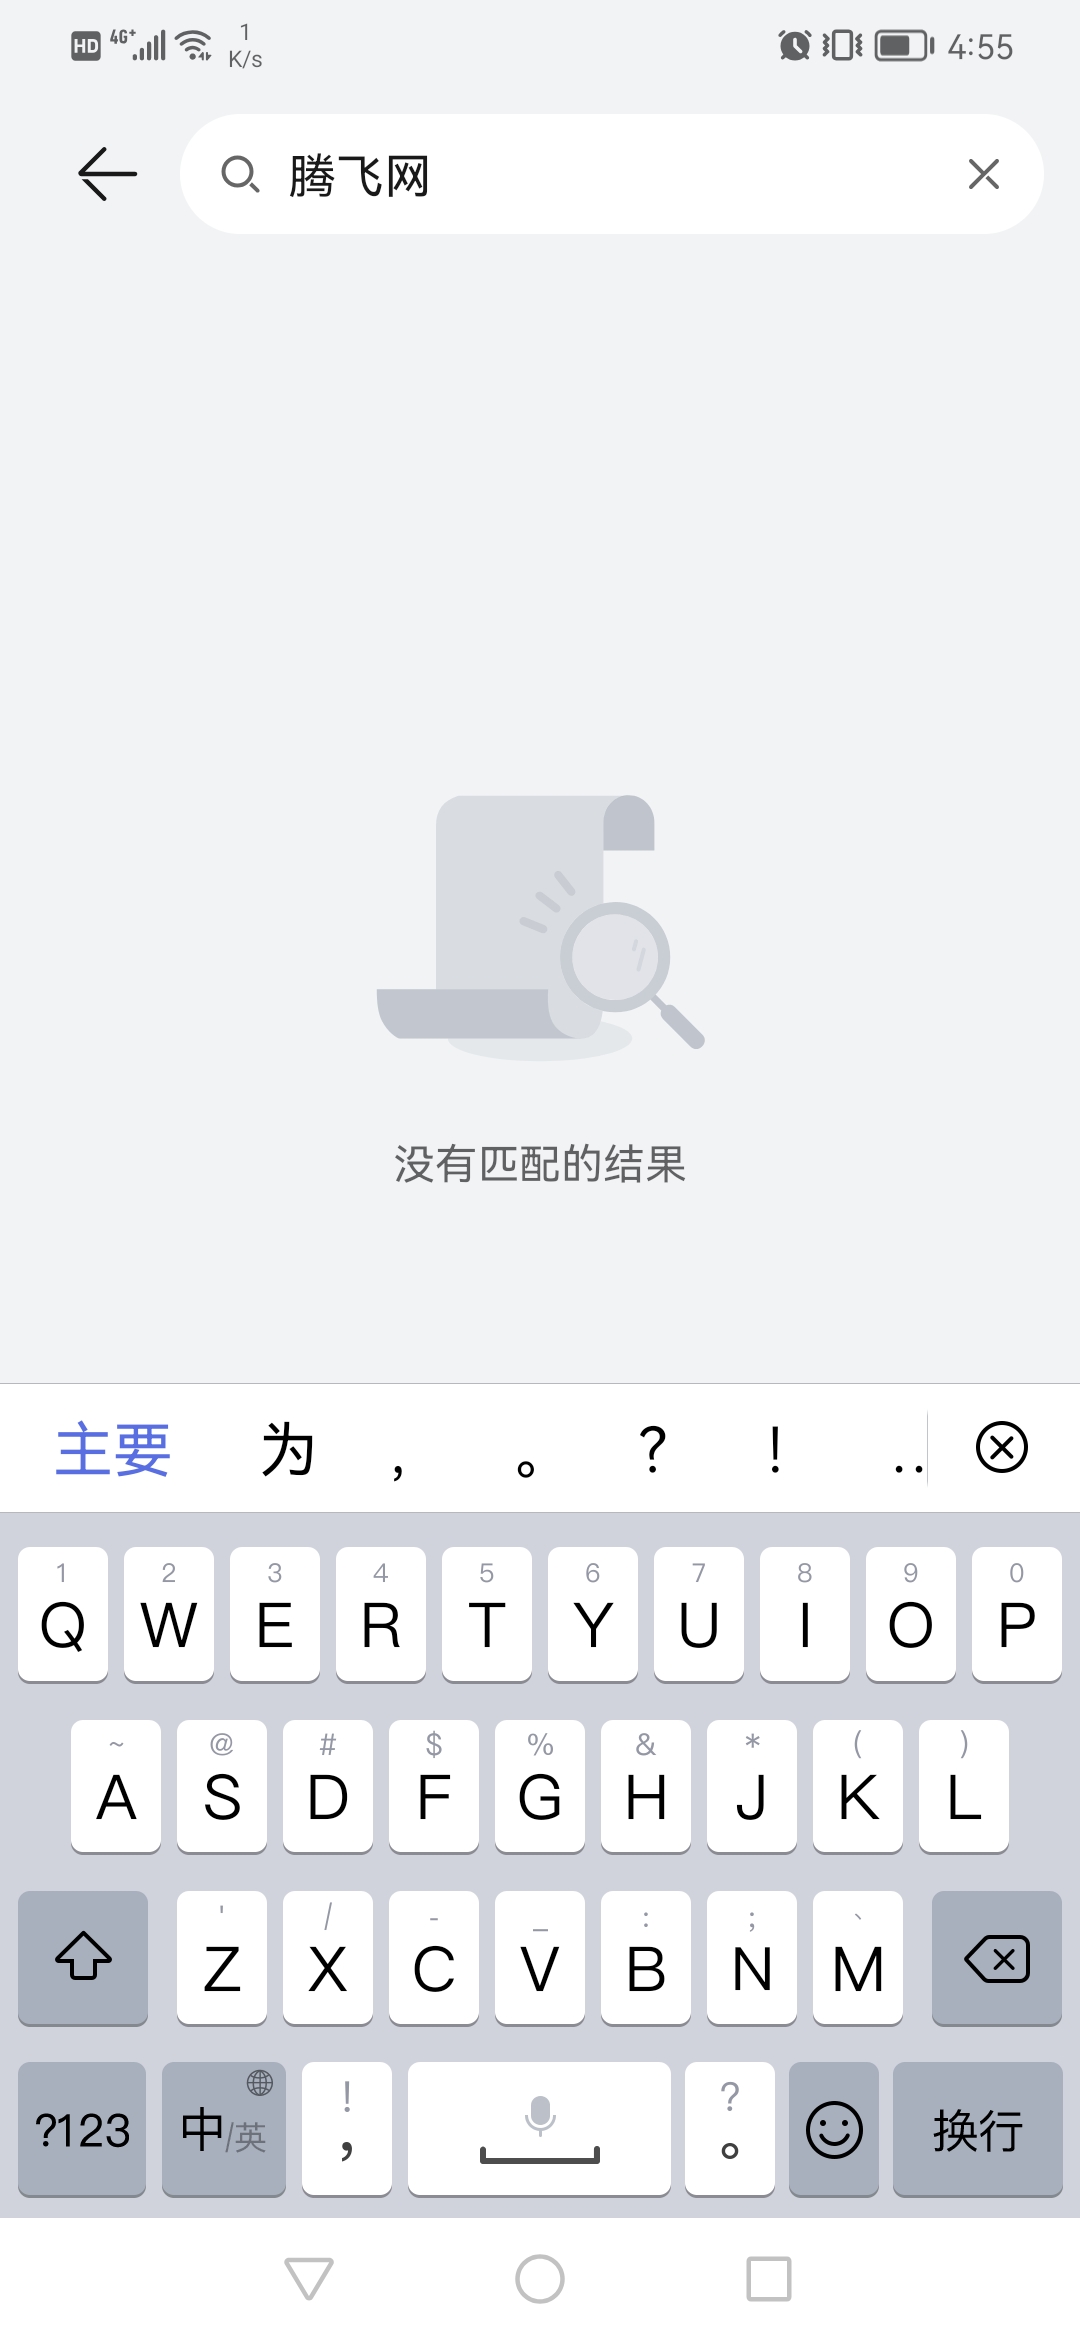 华为原装录音机app最新版v11.1.1.440 安卓版